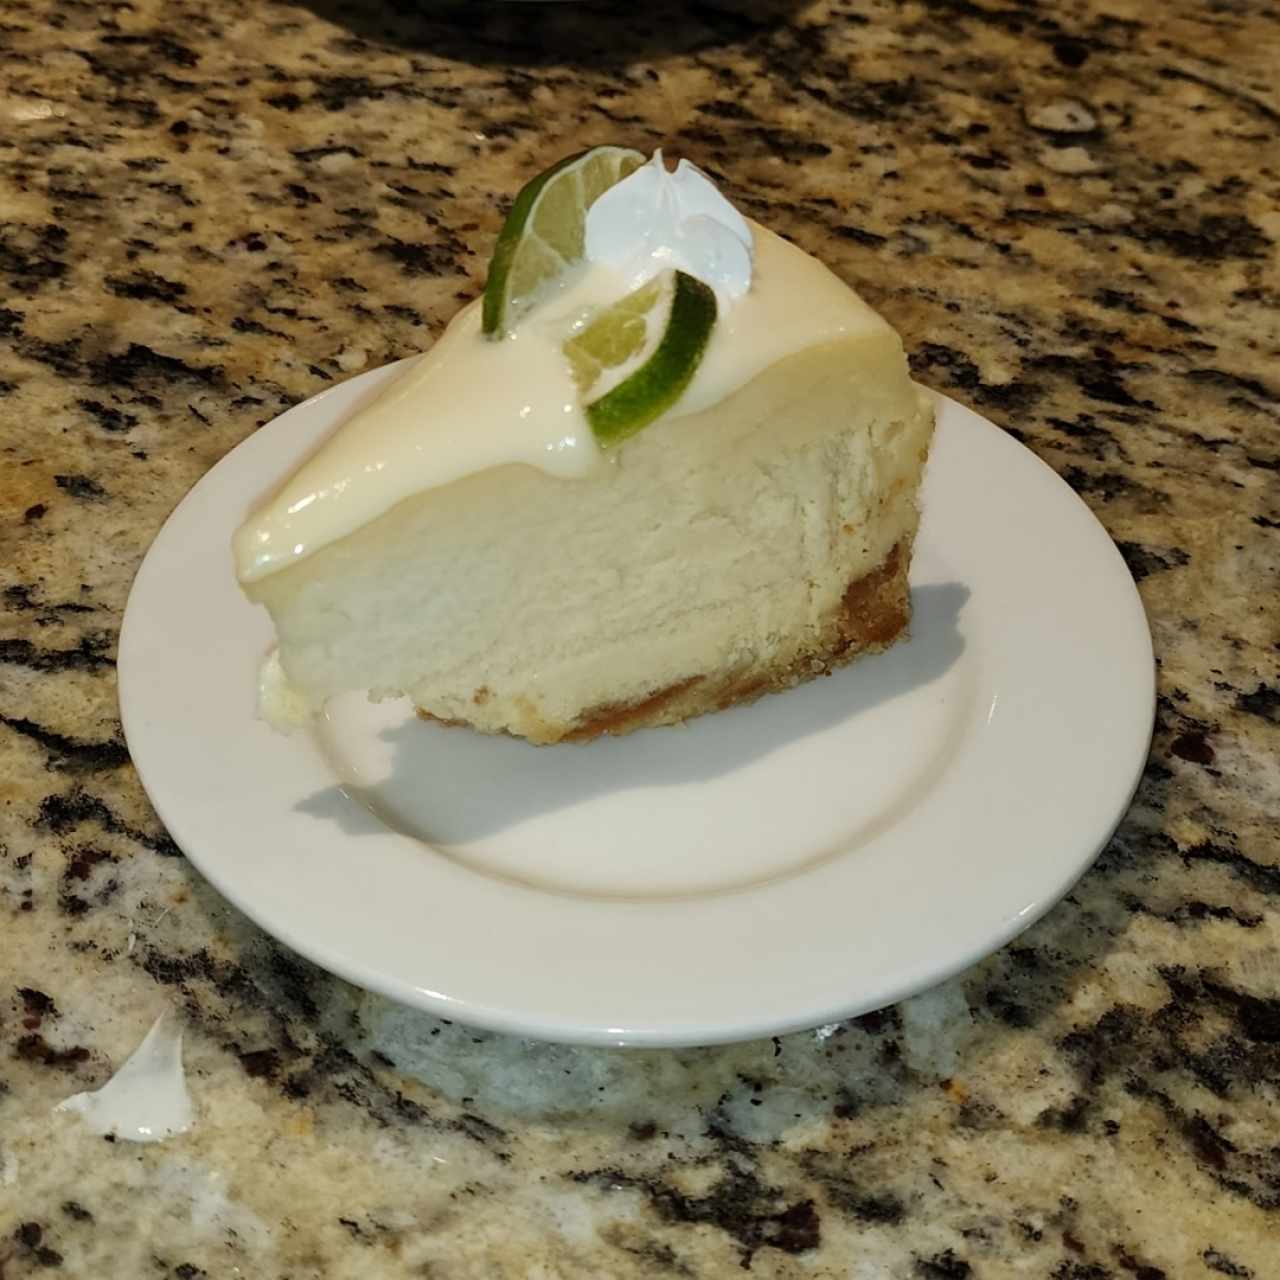 Pasteleria - Cheesecake de Limón